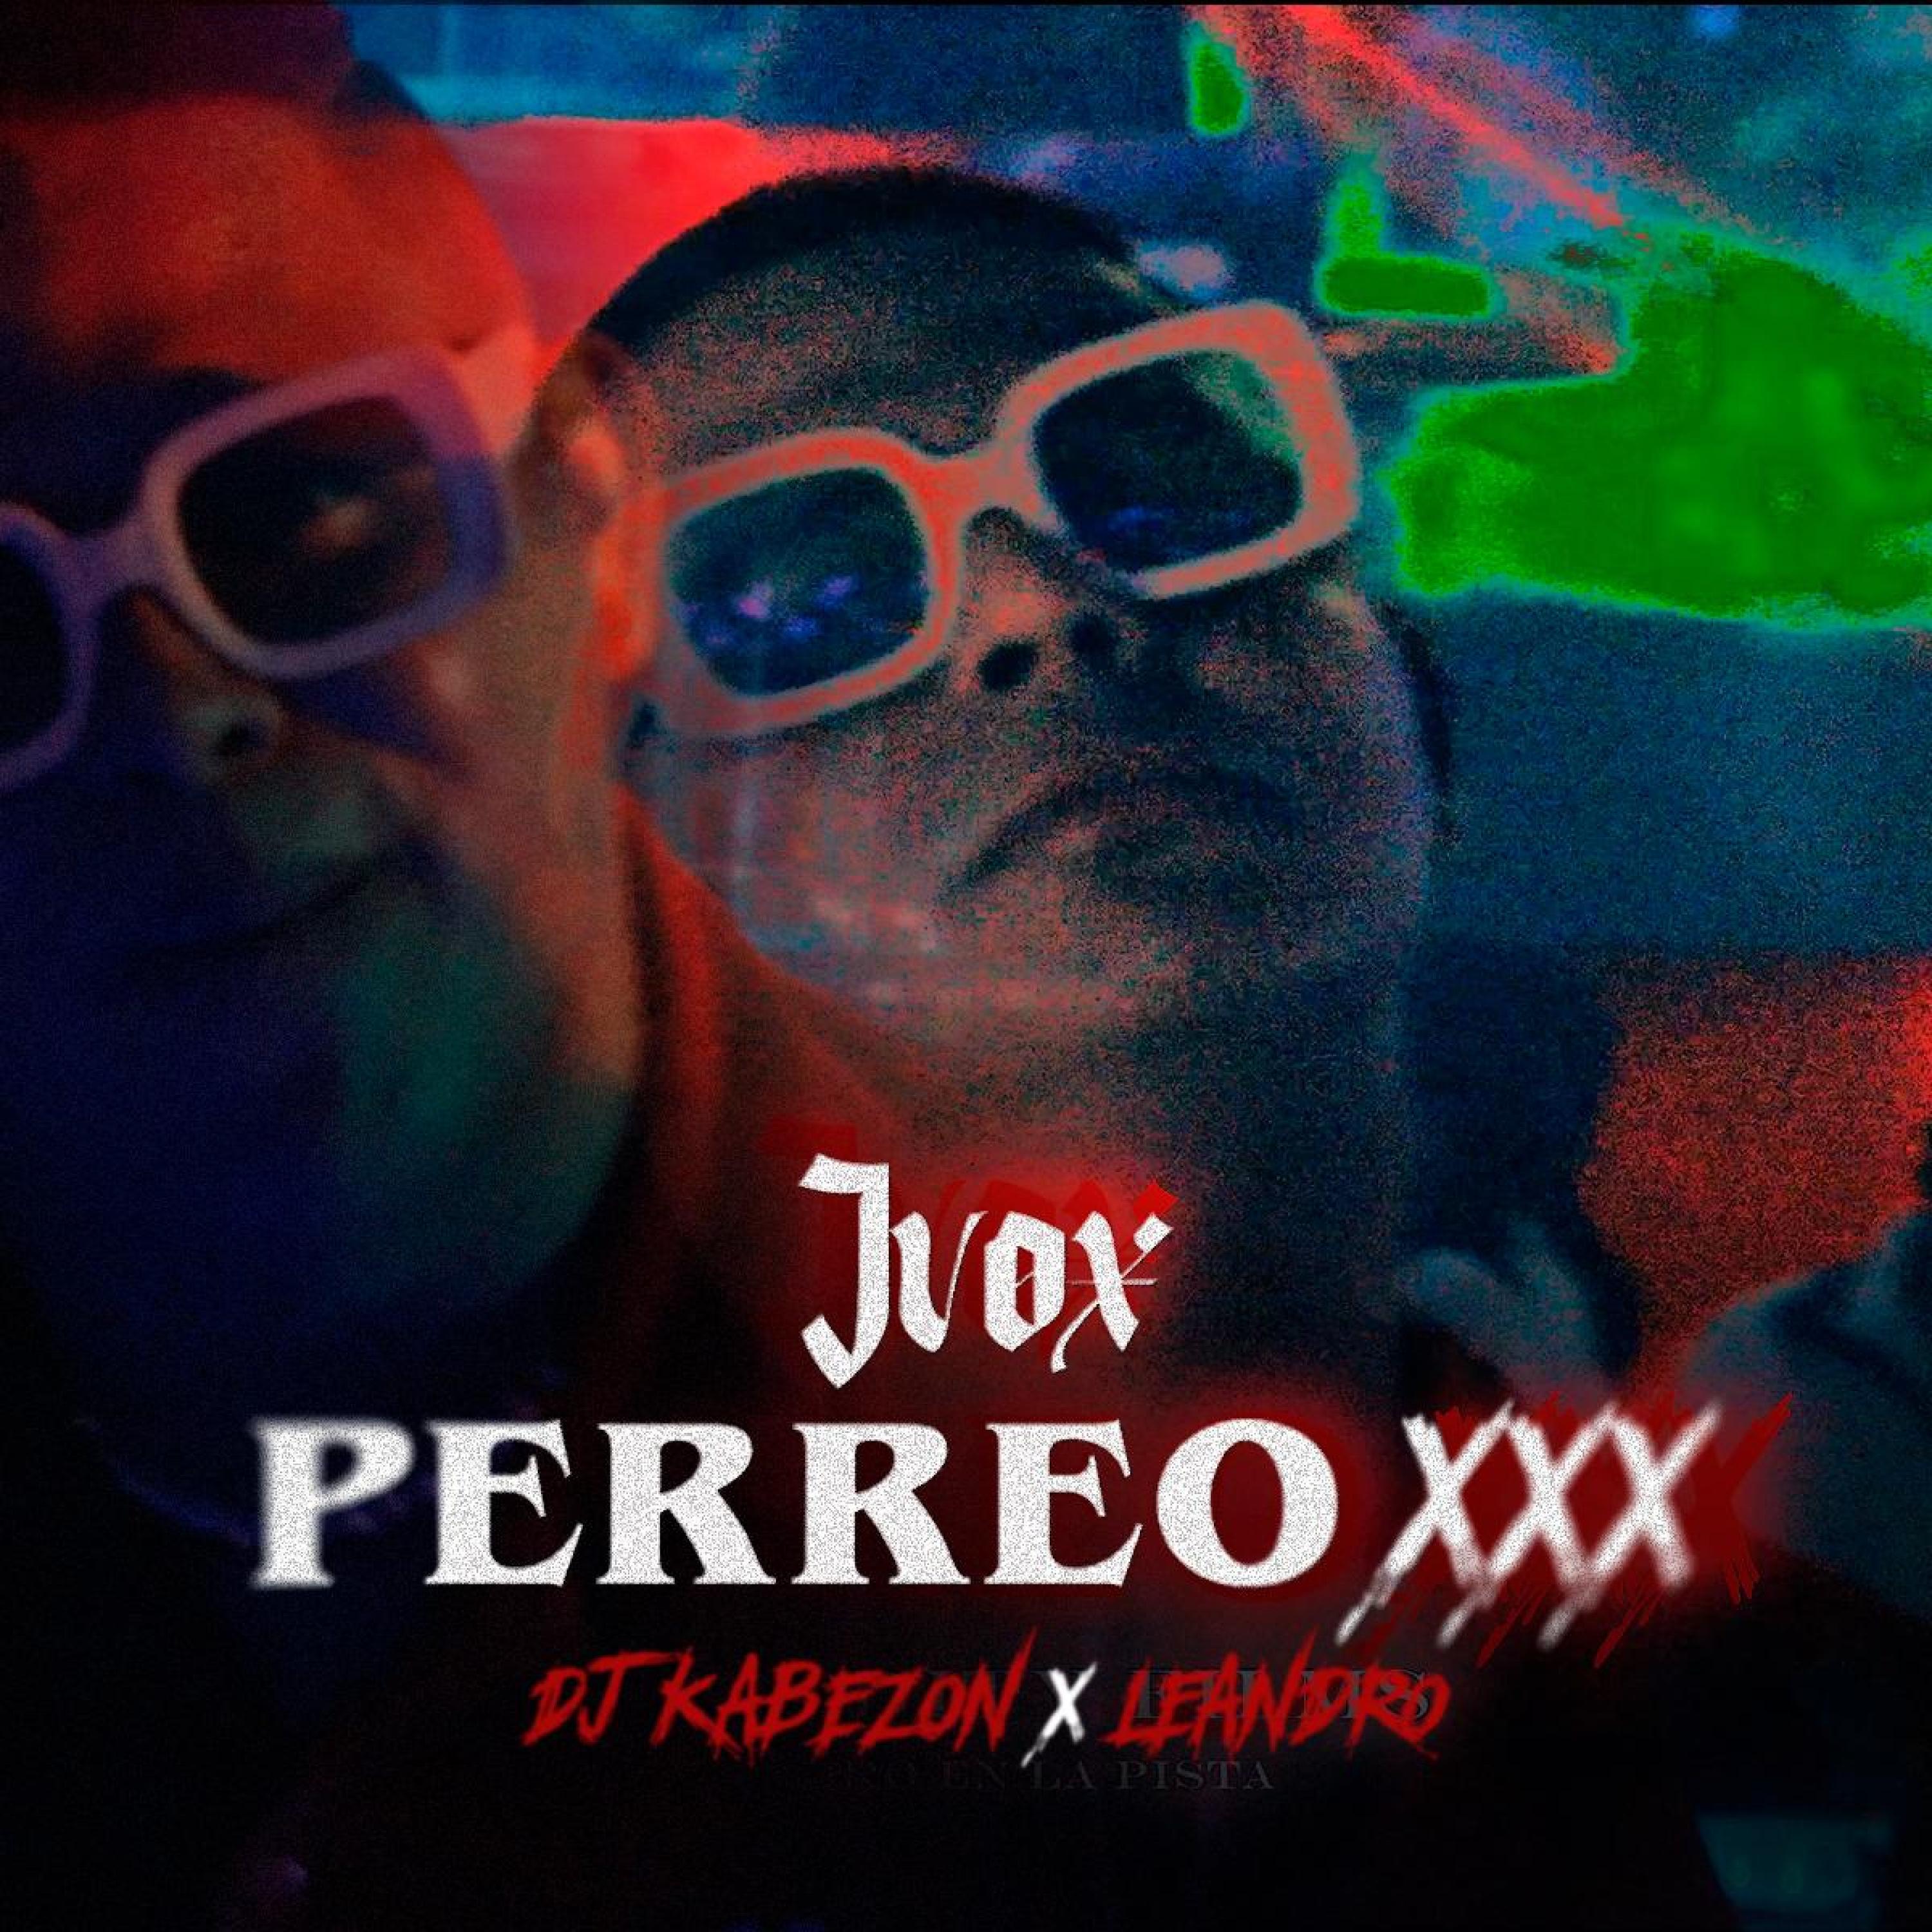 Dj Kabezon - PERREO XXX (feat. Ivoxmusic)